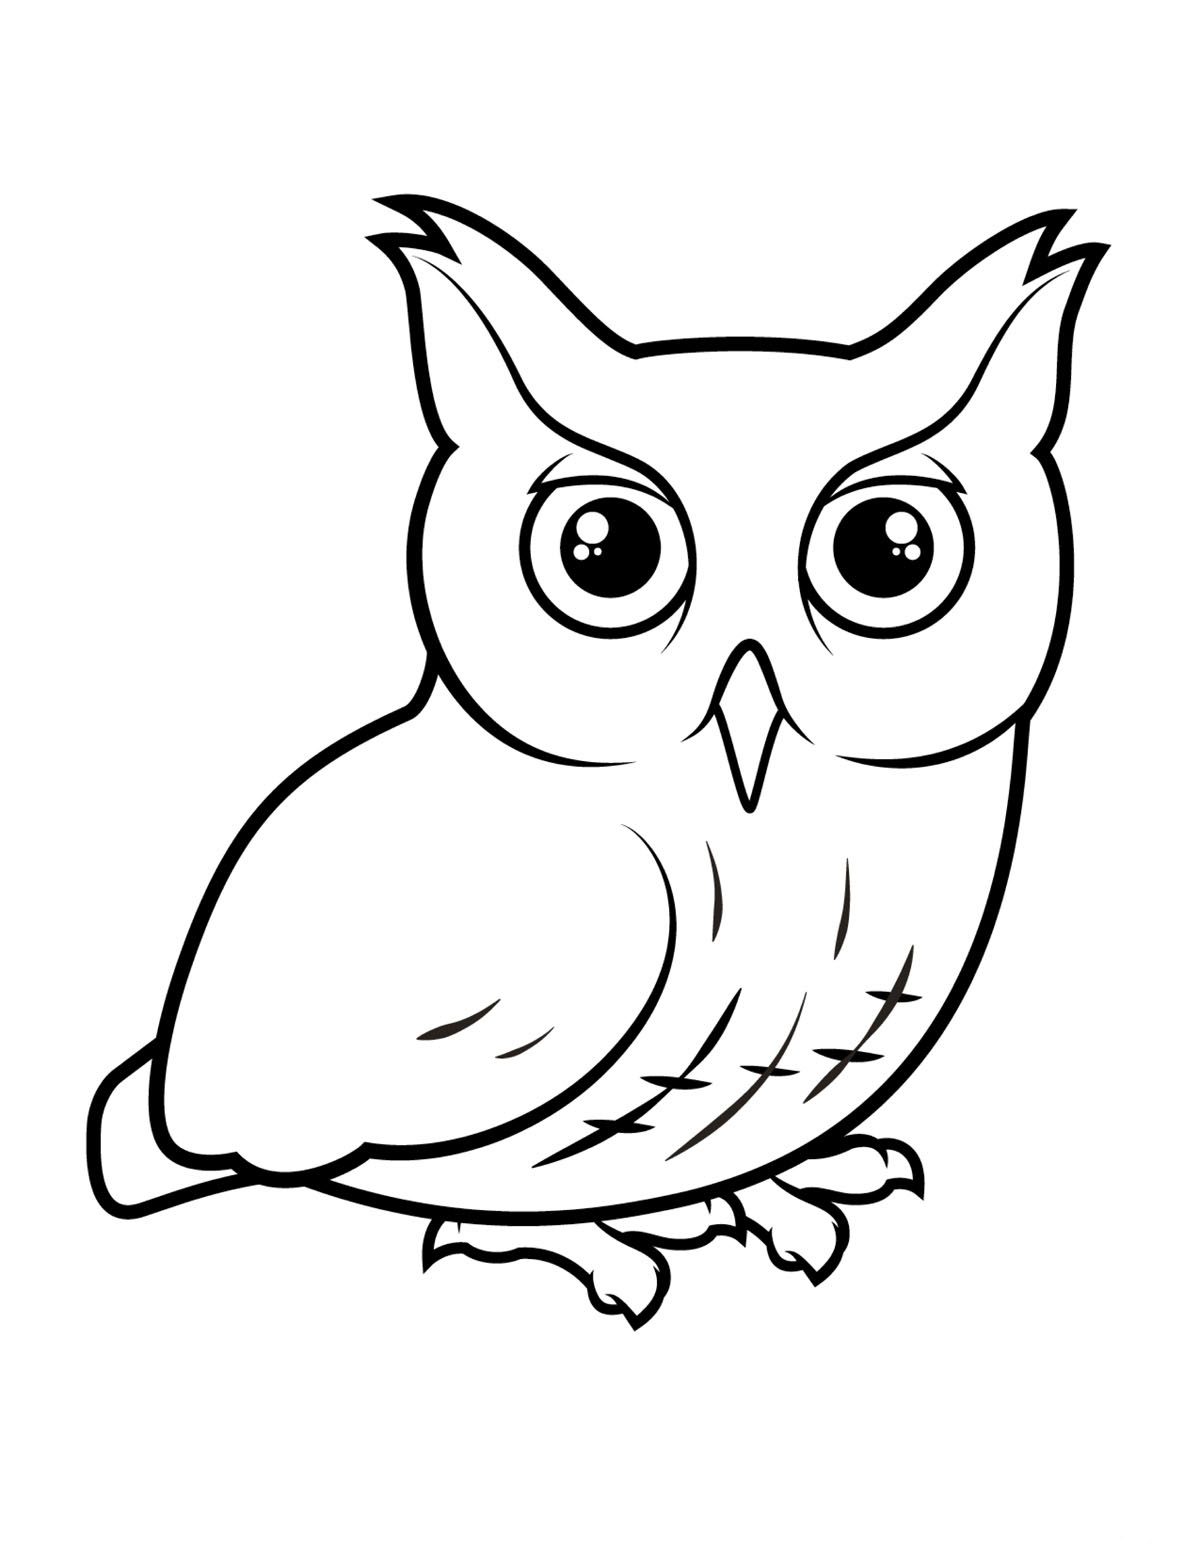 Big-eyed owl